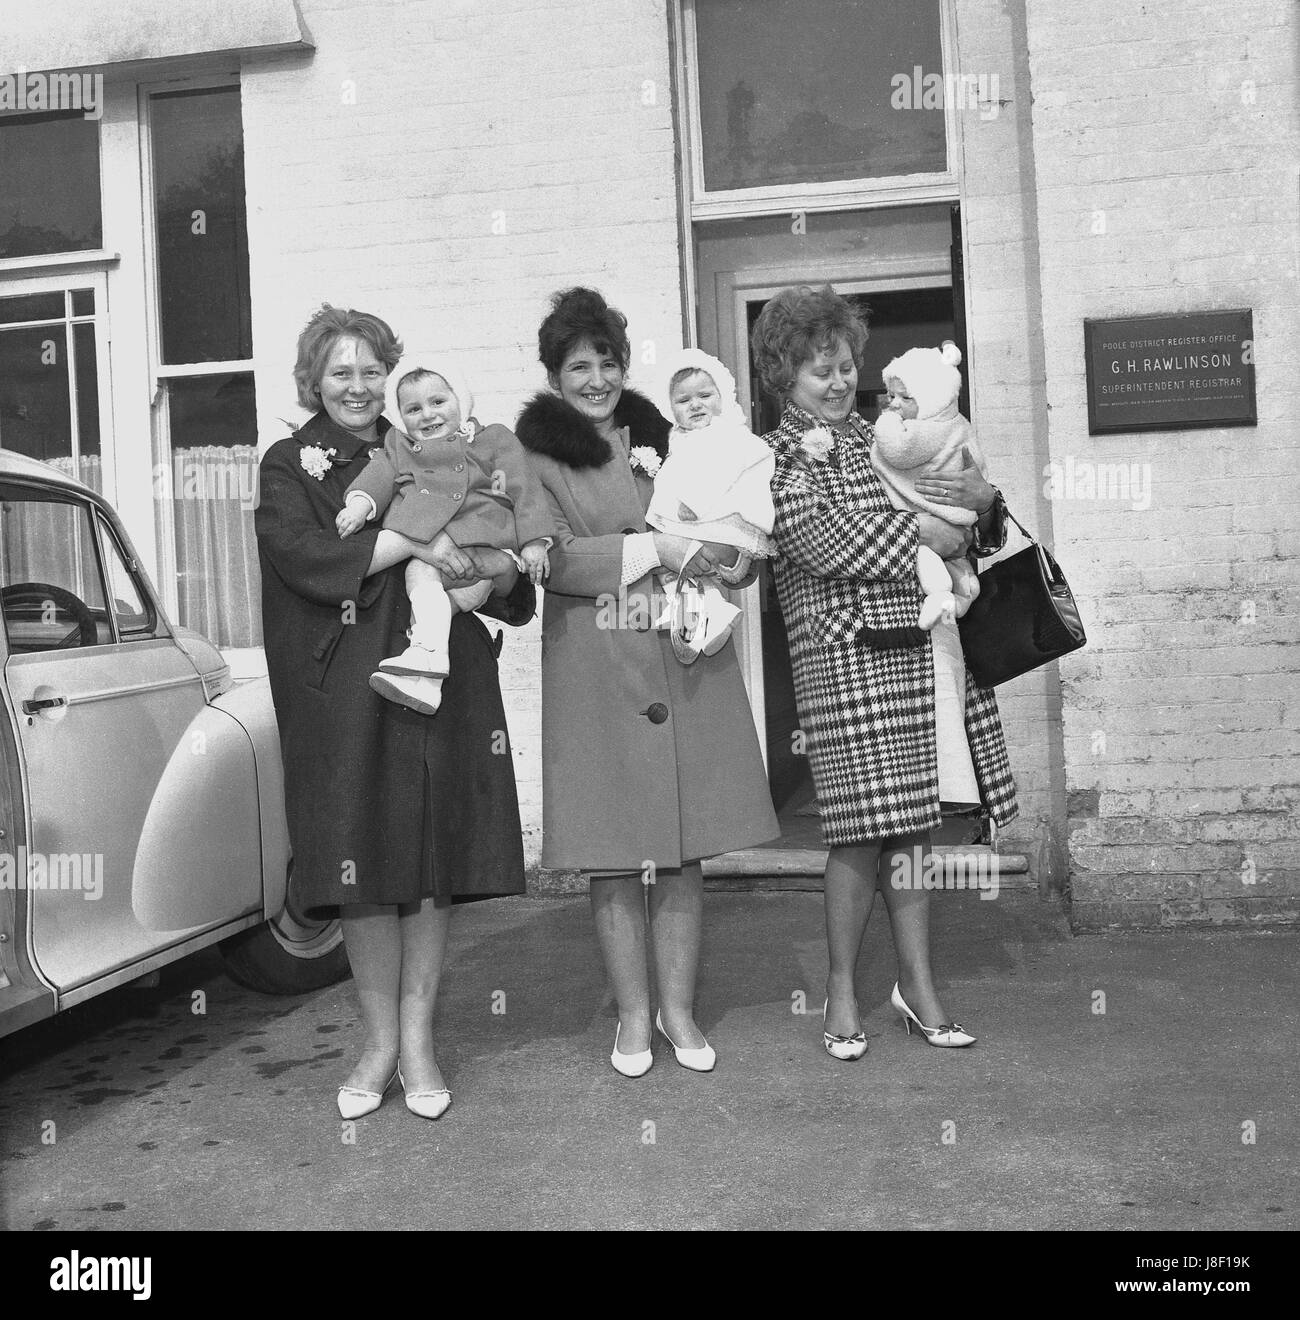 Années 1960, en Angleterre, trois mères avec des bébés se fier à l'extérieur du bureau de district de Poole Registery juste après avoir inscrit leur enfant, naissances, Dorset, Angleterre. Banque D'Images